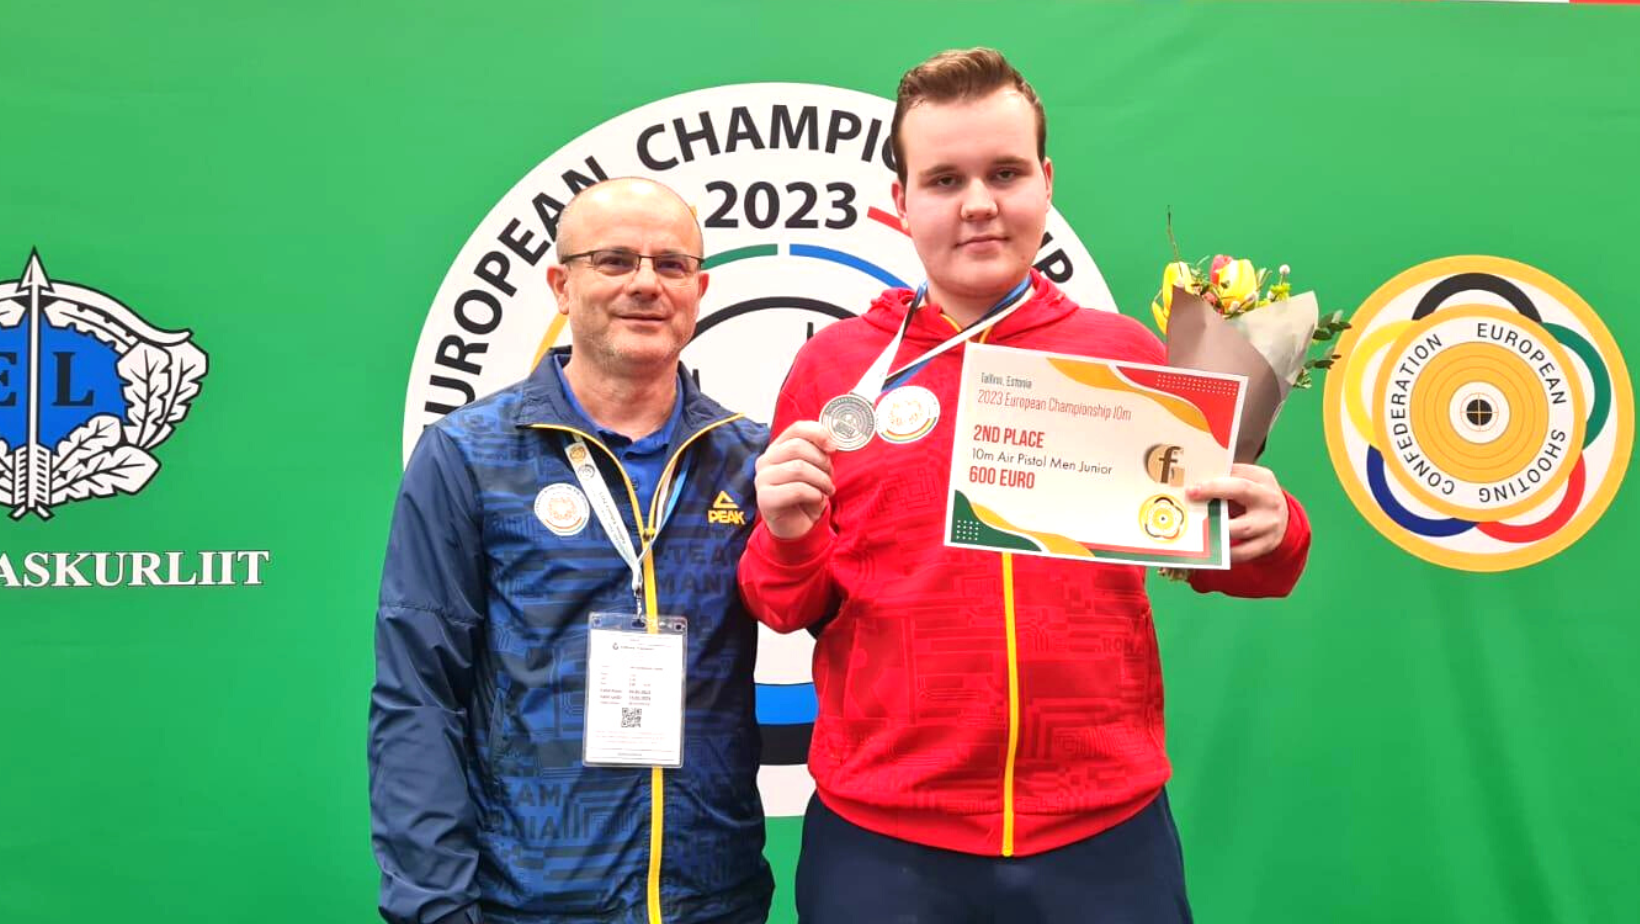 Luca Joldea a câștigat medalia de argint la Campionatele Europene de tir cu aer comprimat de la Tallinn